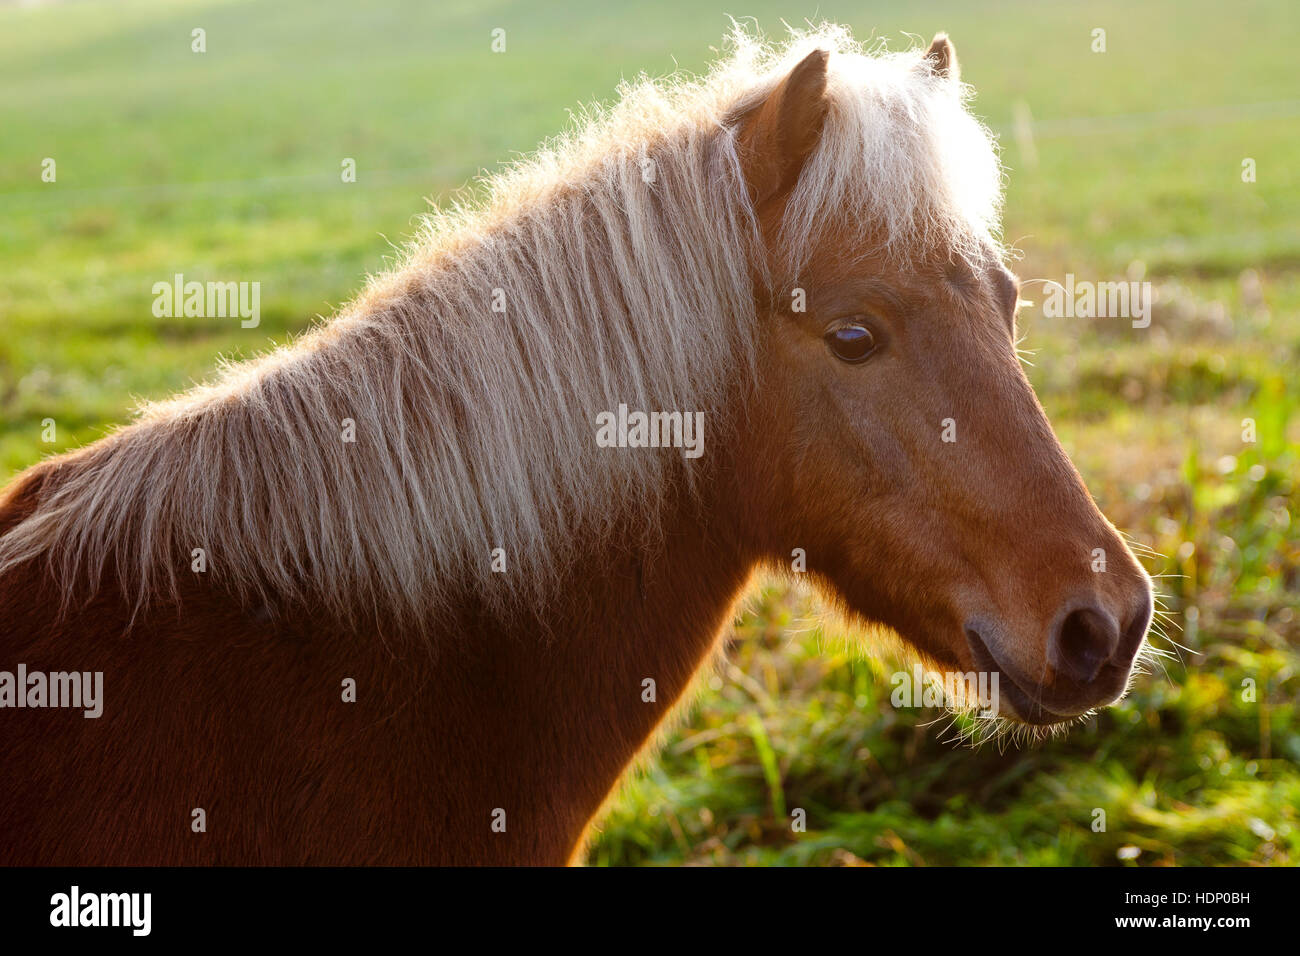 Europa, en Alemania, en Renania del Norte-Westfalia, pony en una pradera. Foto de stock